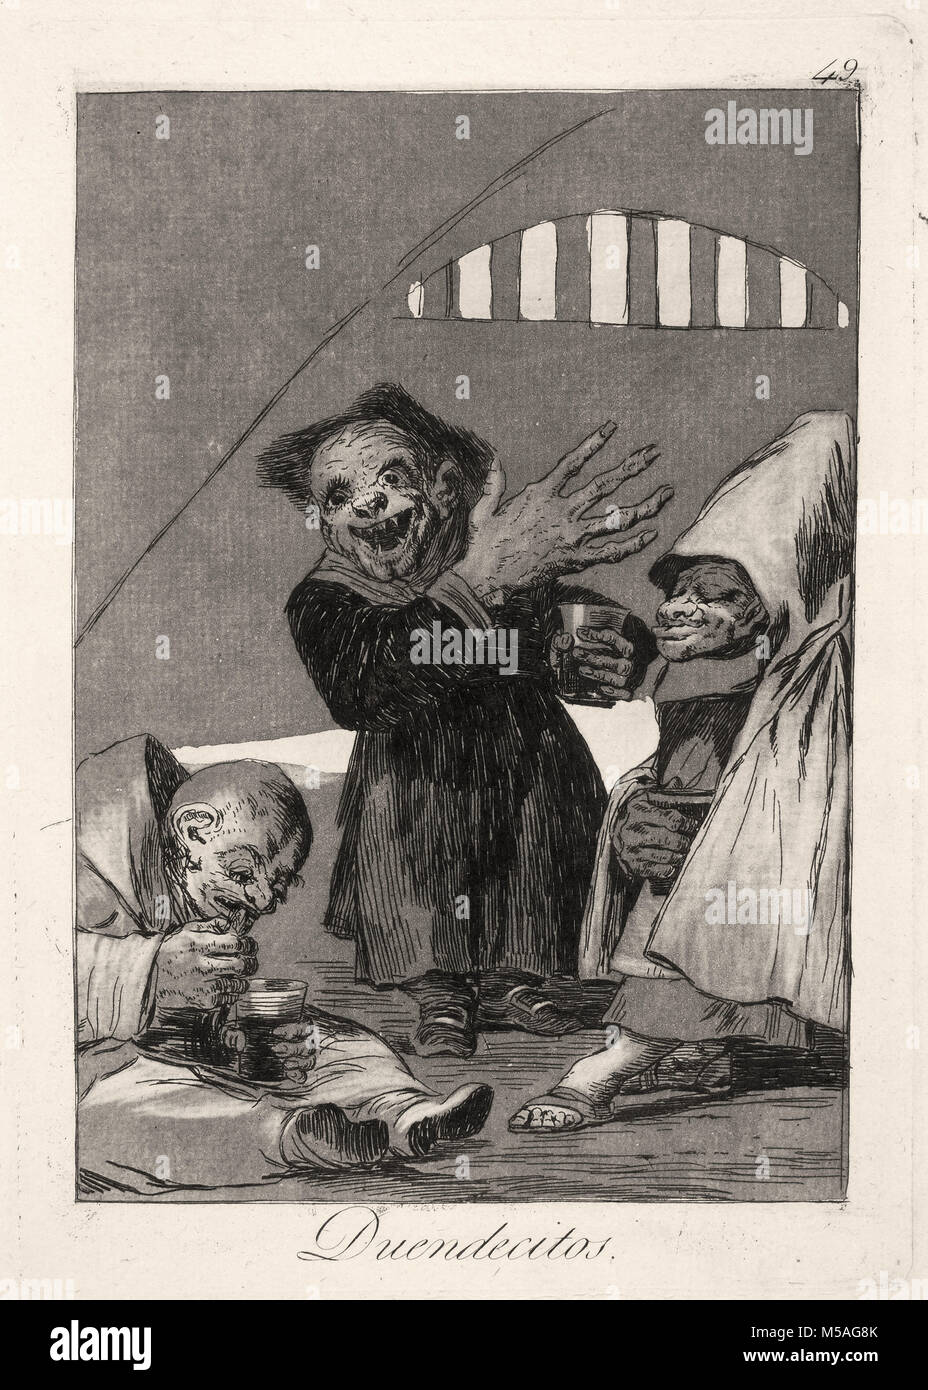 Francisco de Goya - Los Caprichos - Nr. 49 - Duendecitos Stockfoto